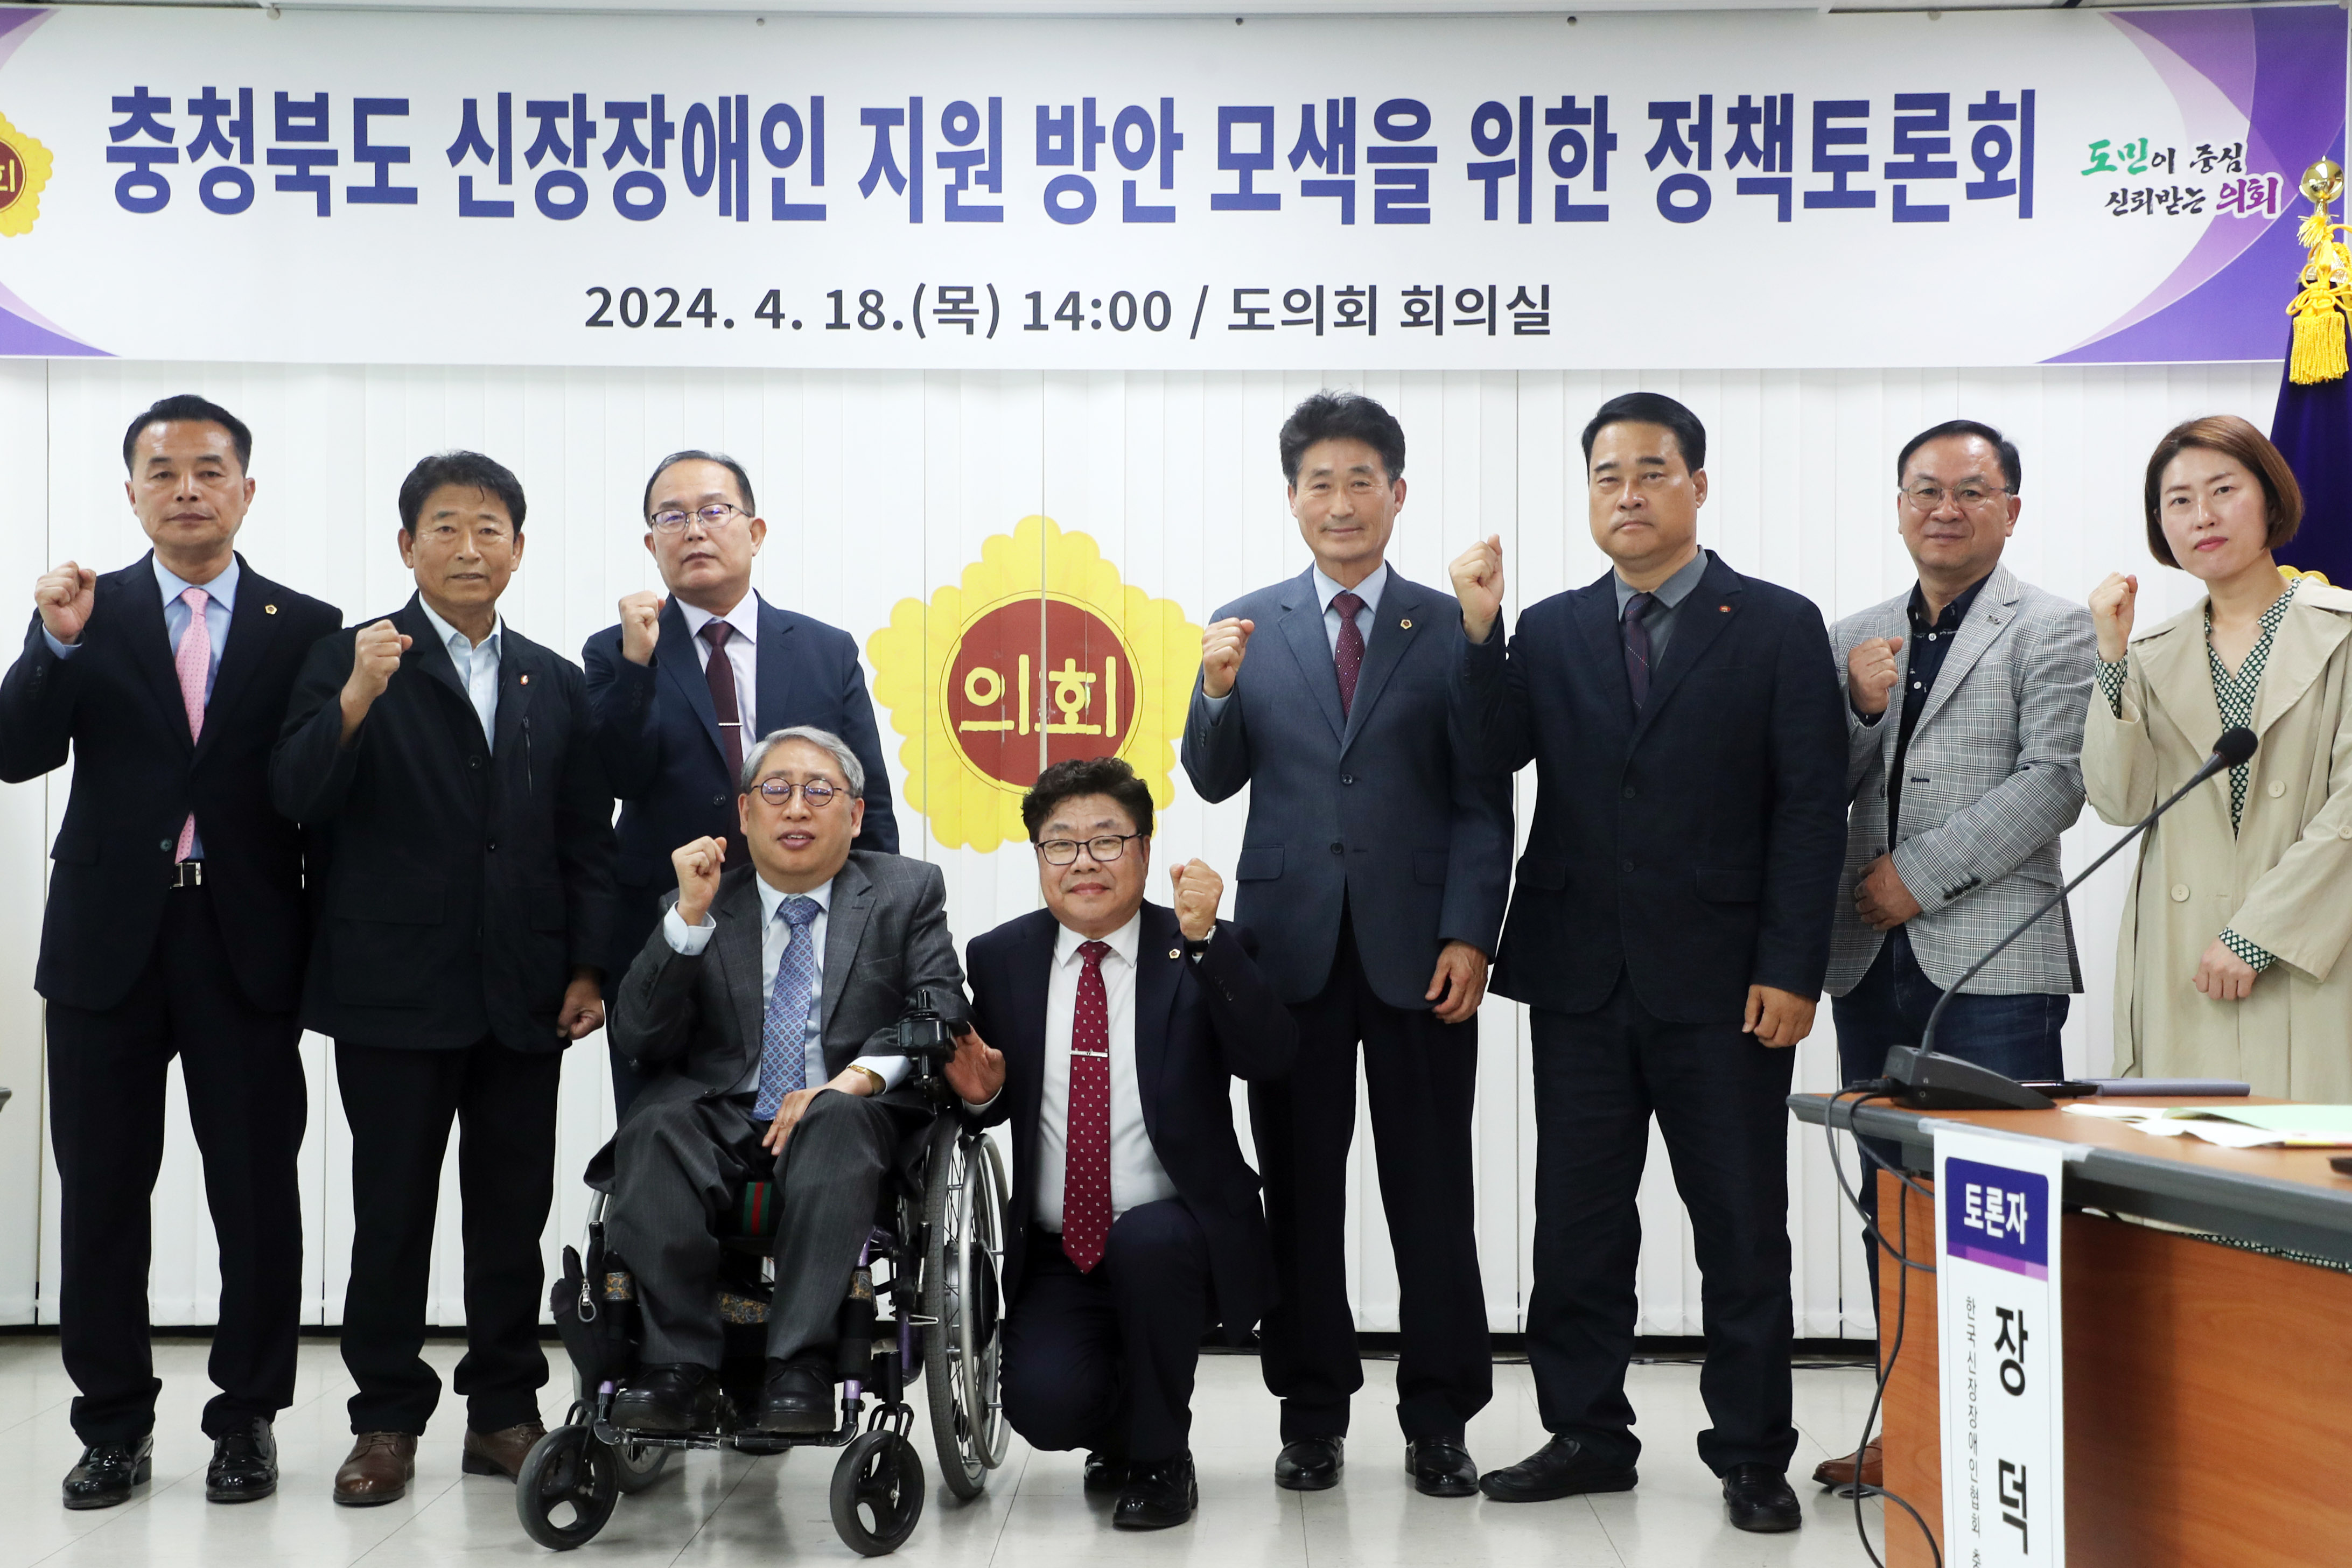 정복위, 충청북도 신장장애인 지원 방안 모색을 위한 정책토론회 개최 - 1